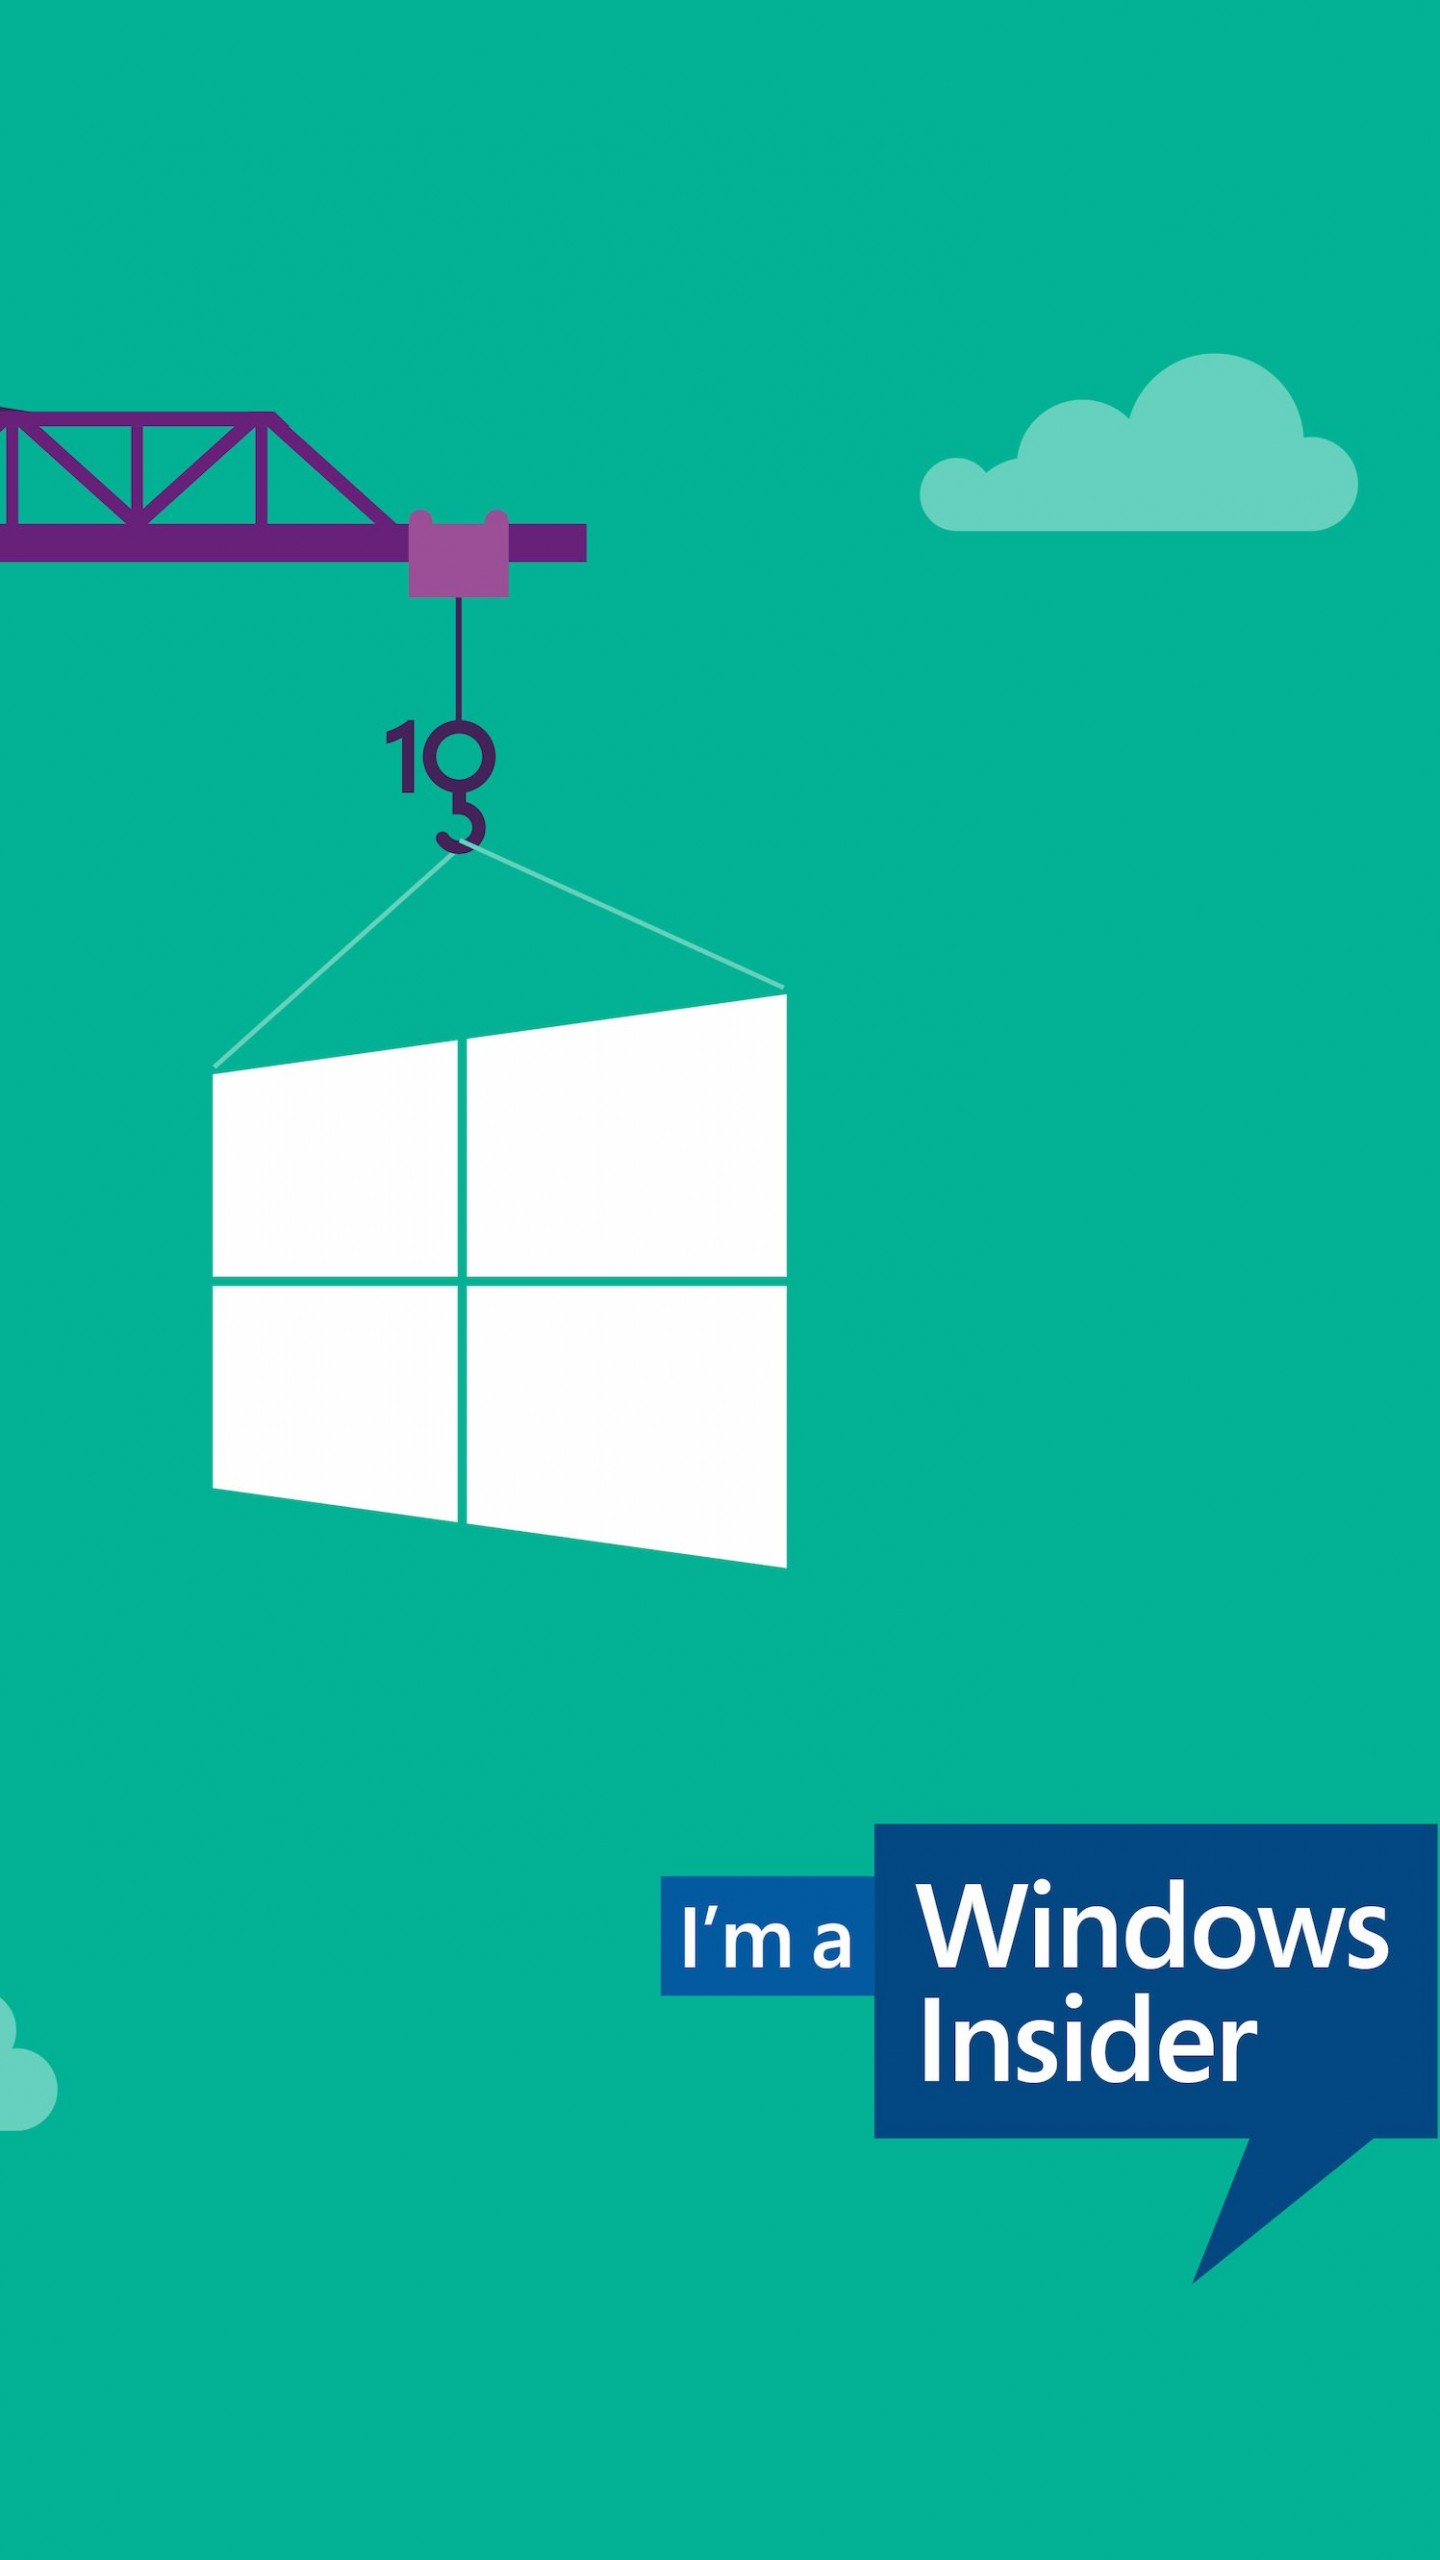 Windows Insider Wallpaper for LG G3